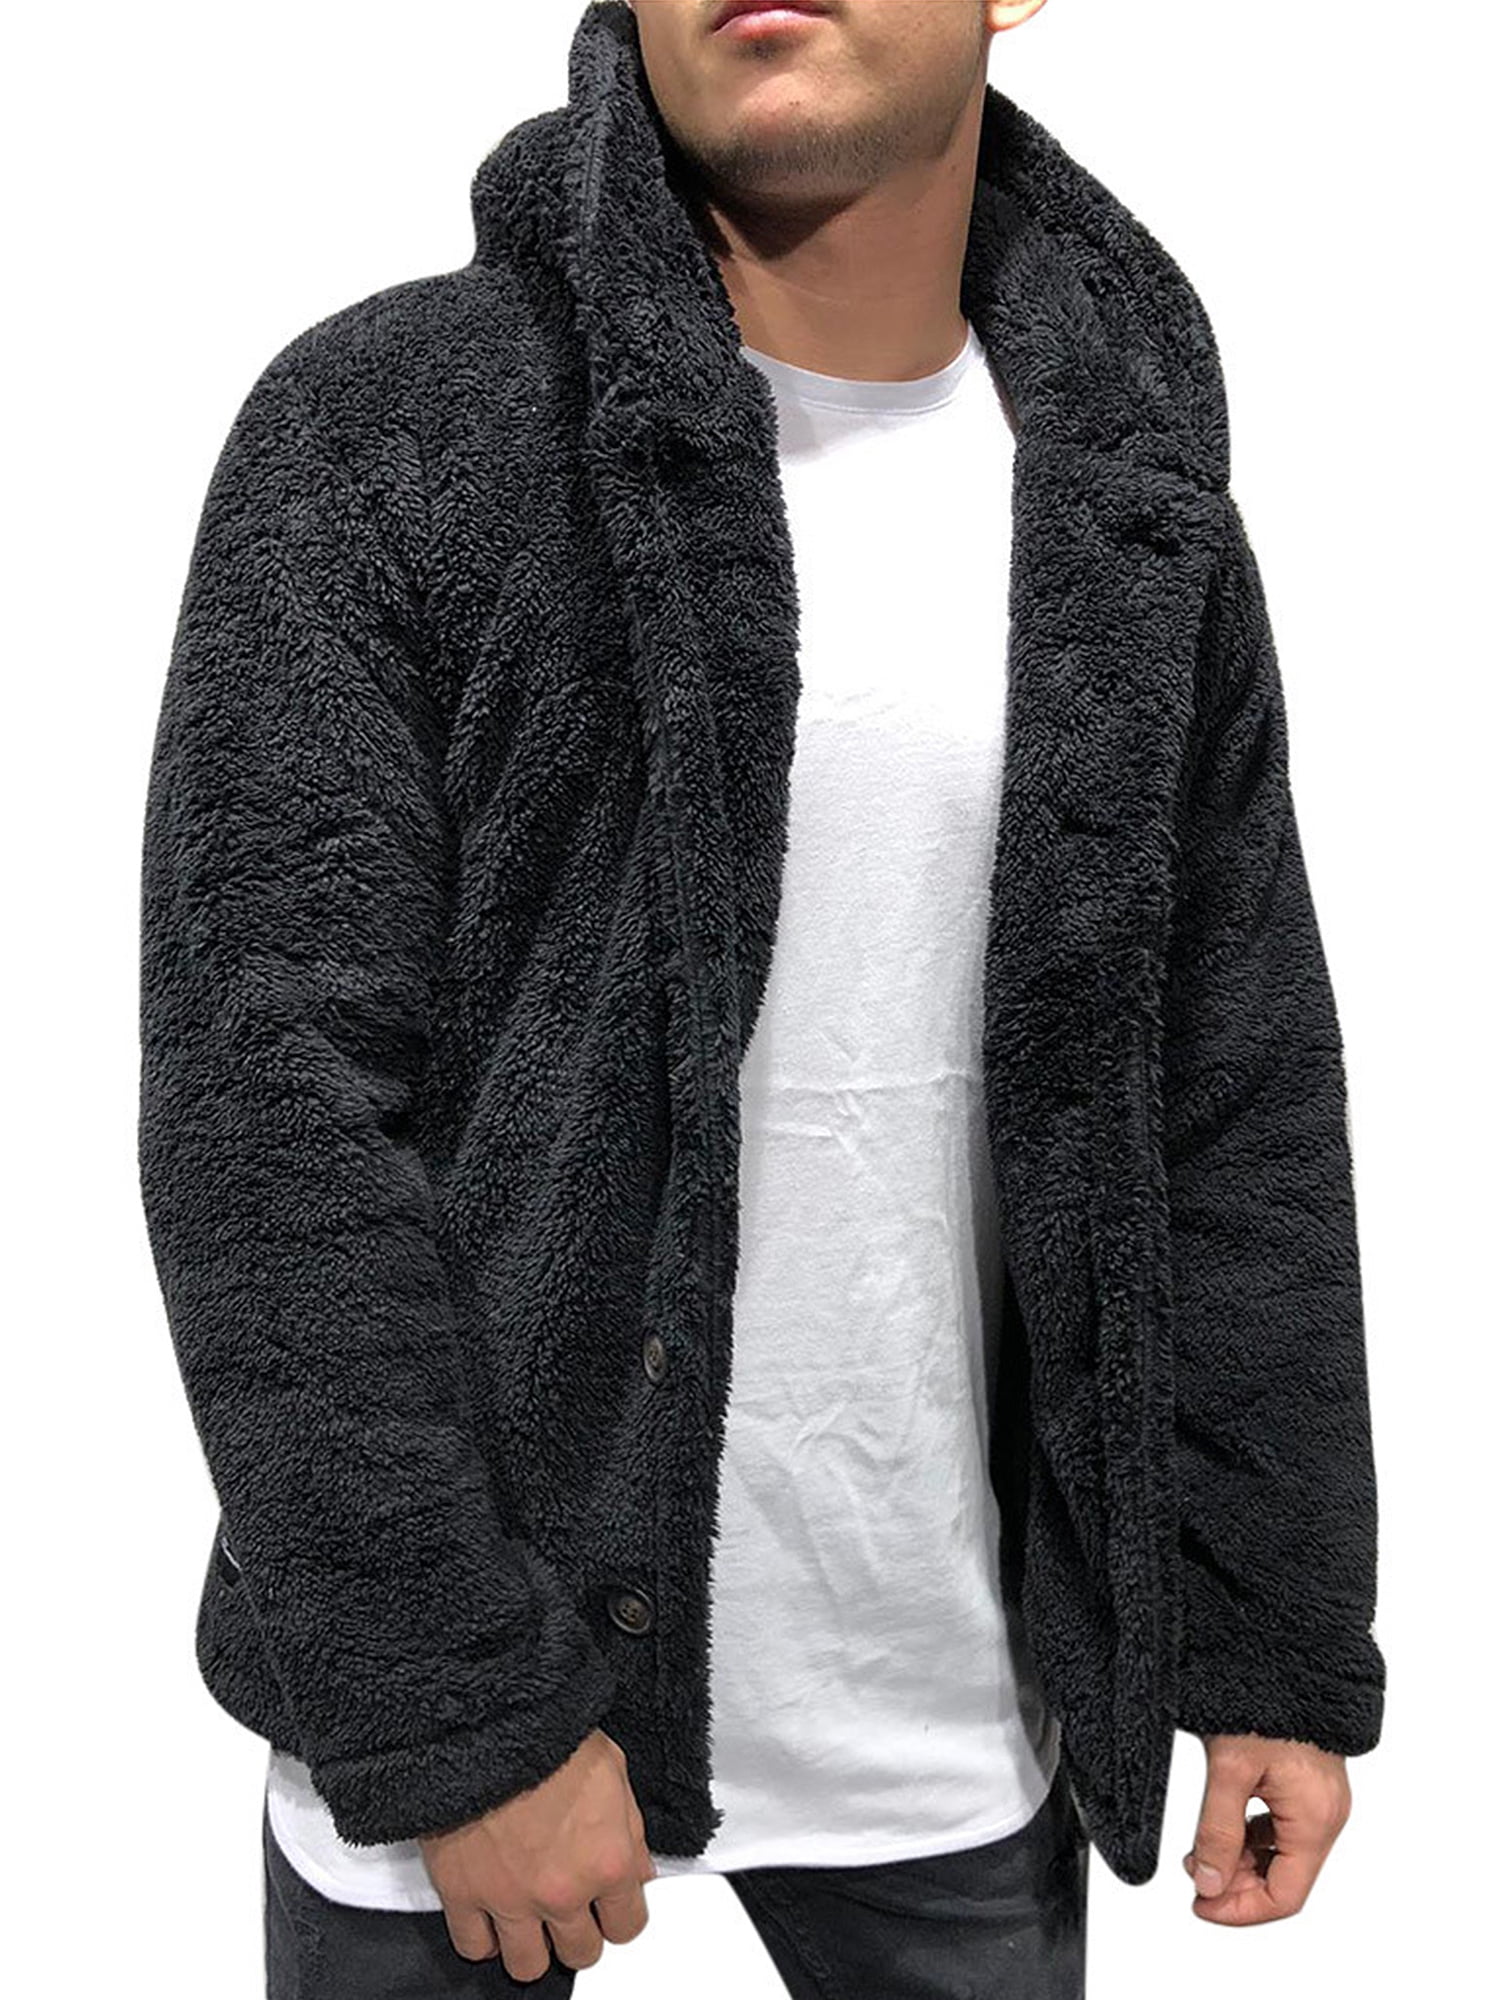 New Mens Hoodies Zip Up Hooded Fleece Zipper Top Plain Jacket Coat Warm Jumper